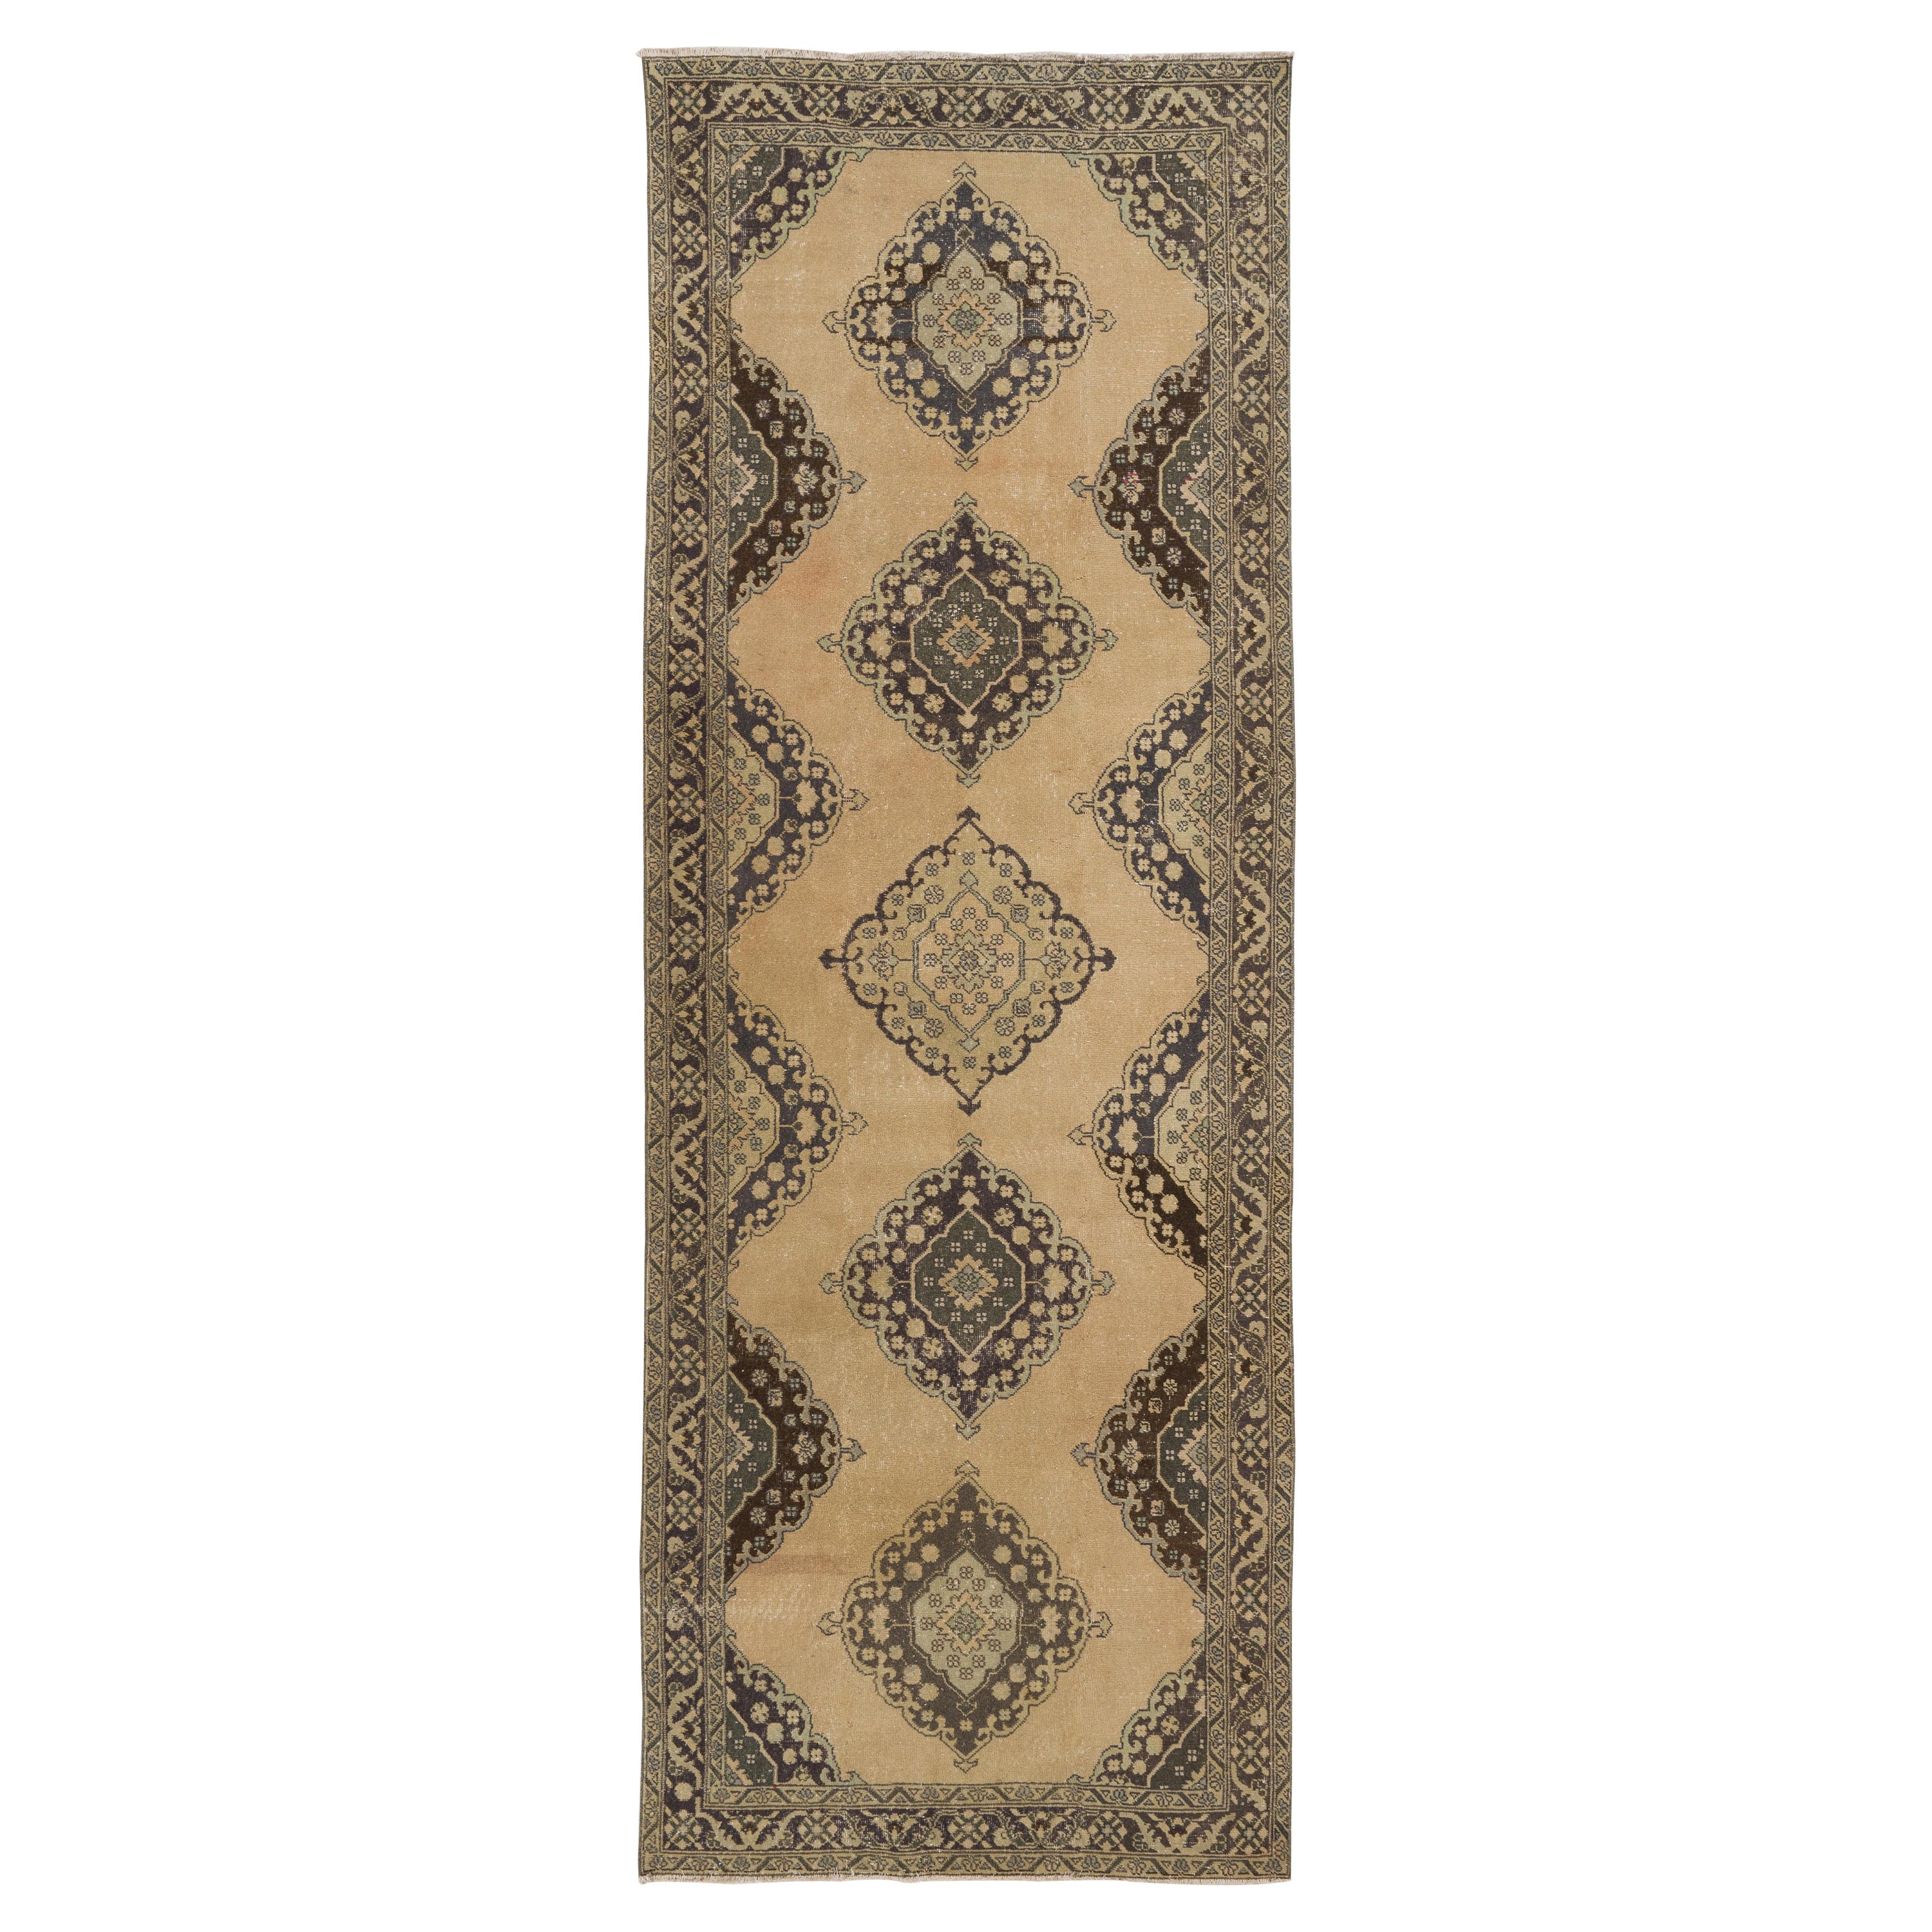 4.7x13 ft Vintage Turkish Oushak Runner Carpet, Hand Knotted Rug for Hallway